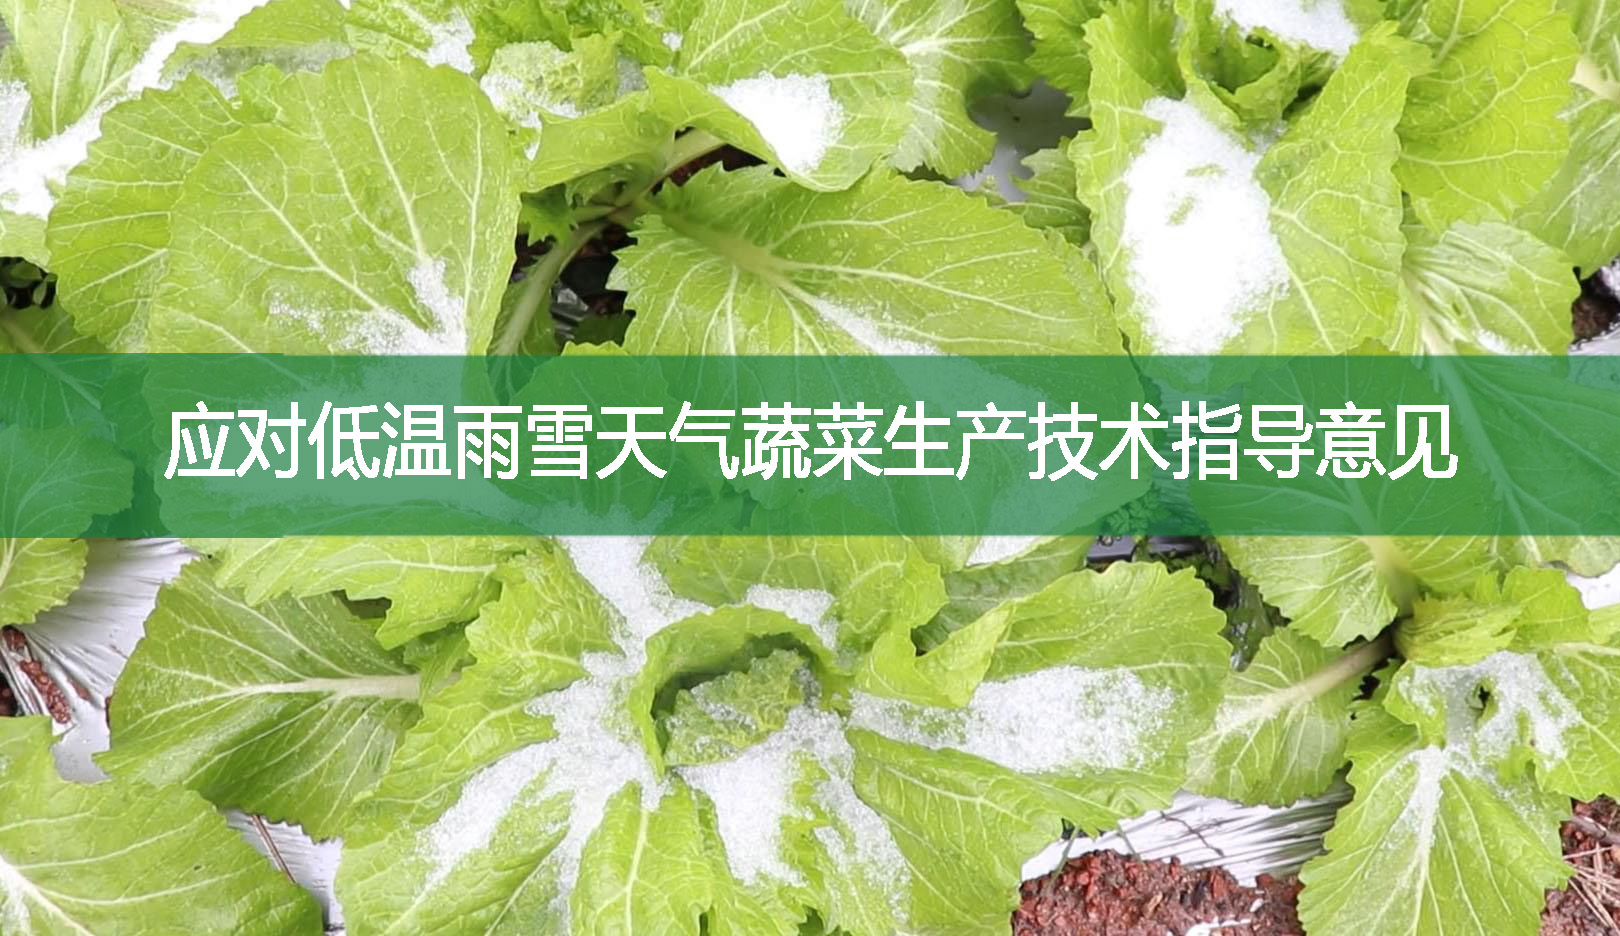 应对低温雨雪天气蔬菜生产技术指导意见